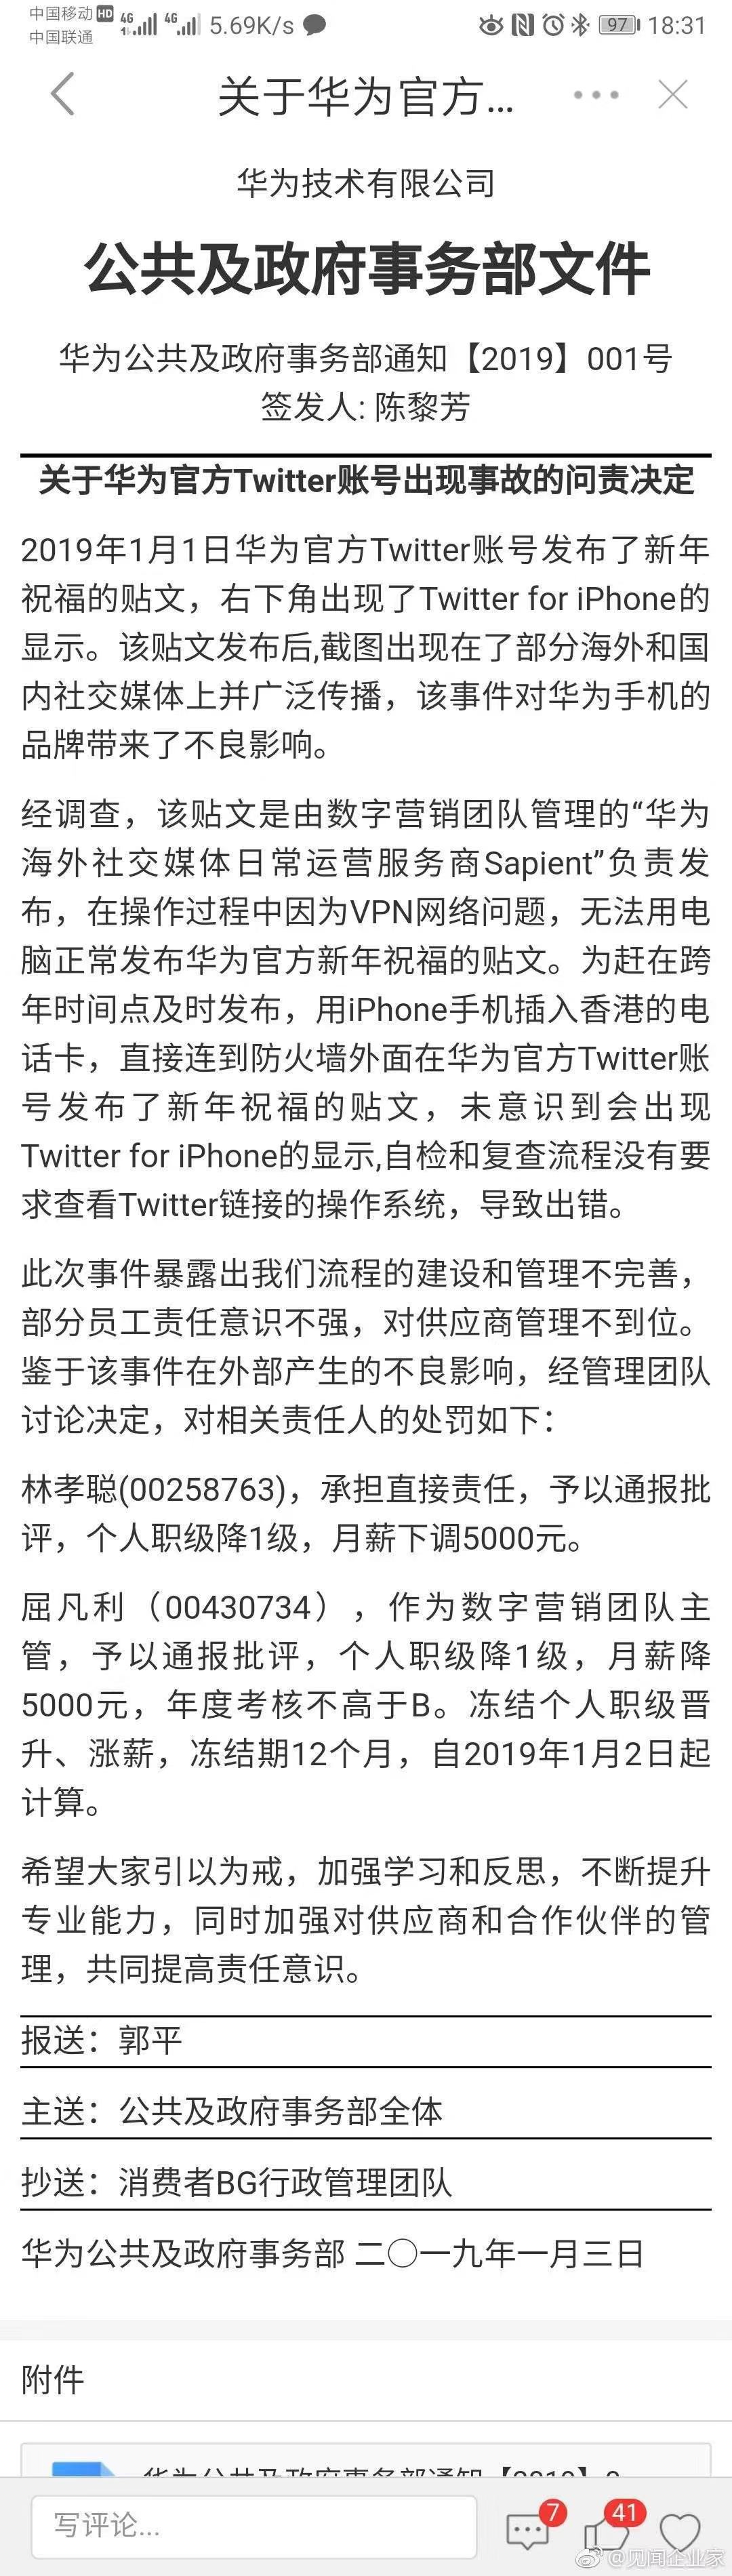 华为通报twitter事故 因vpn问题用iphone发布 两员工遭降级减薪处罚 三言财经